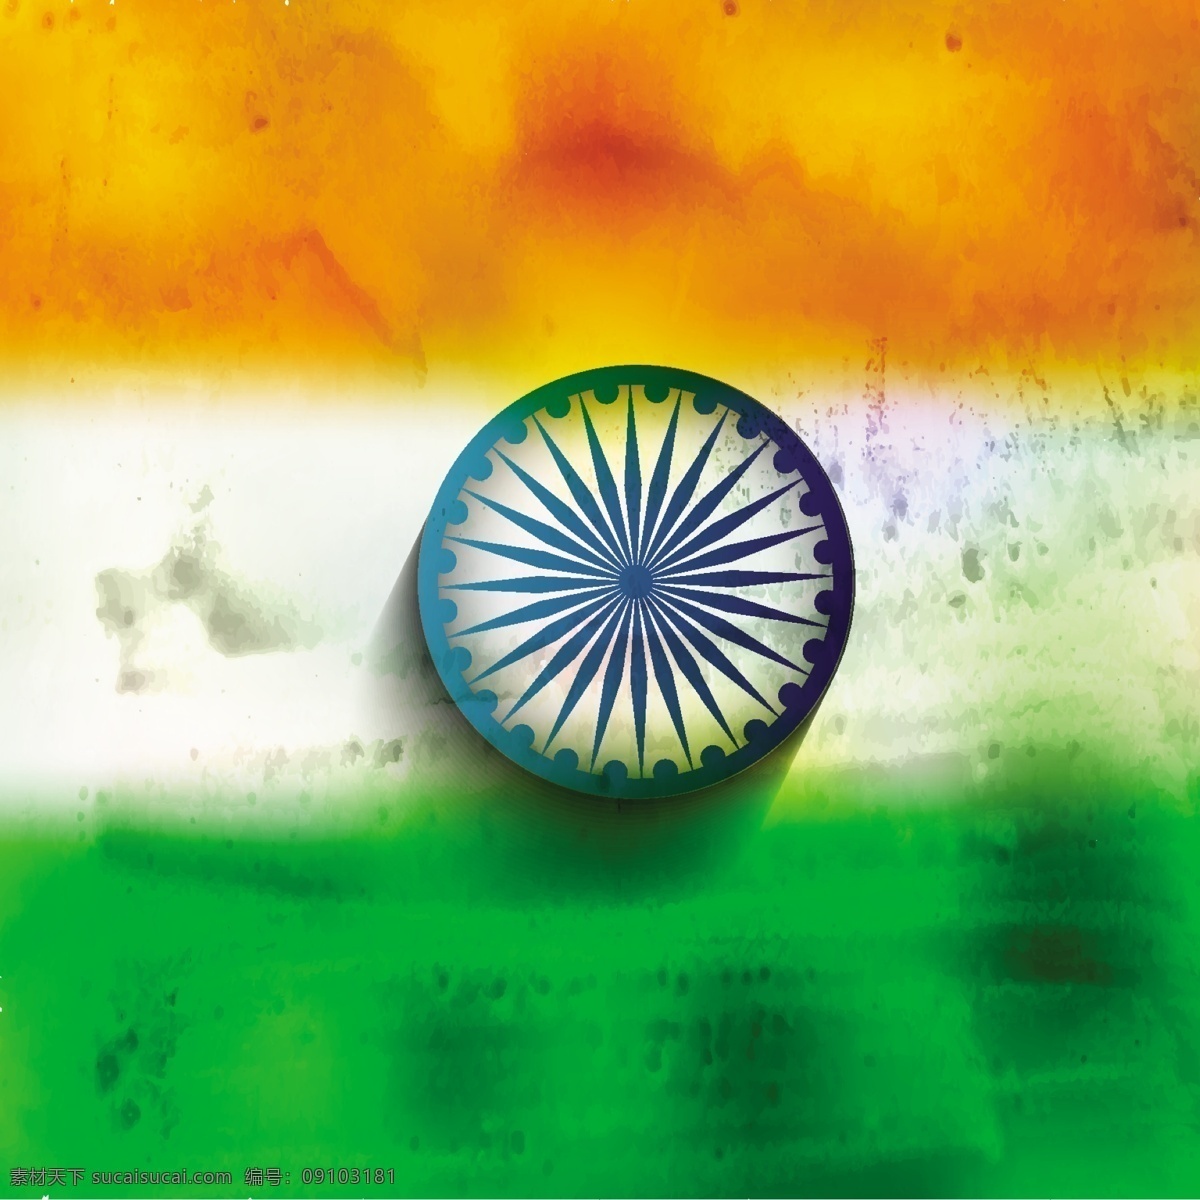 蹩脚 印度 国旗 背景 抽象 垃圾 节 假日 轮 和平 印度国旗 独立日 国家 垃圾背景 自由的一天 政府 爱国 一月 橙色